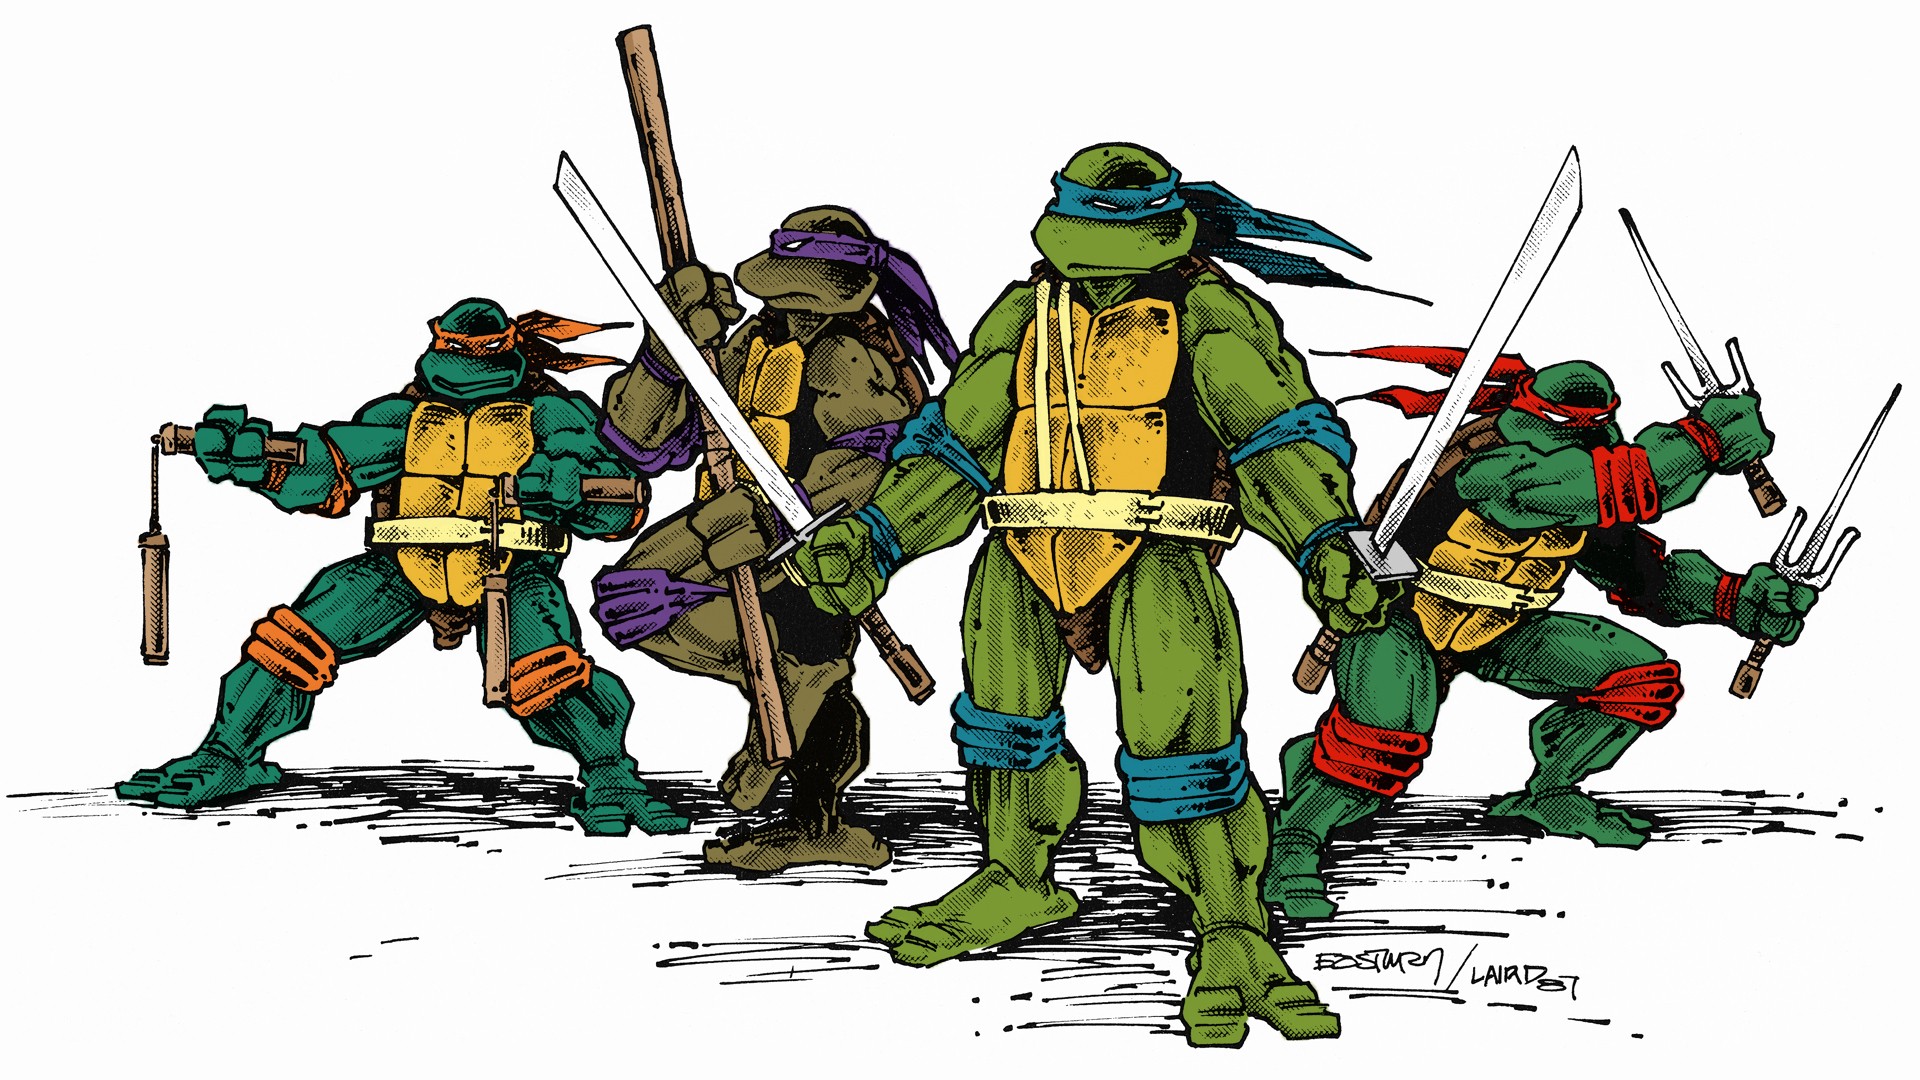 fond d'écran de tortues ninja,tortues ninja mutantes adolescentes,personnage fictif,super héros,illustration